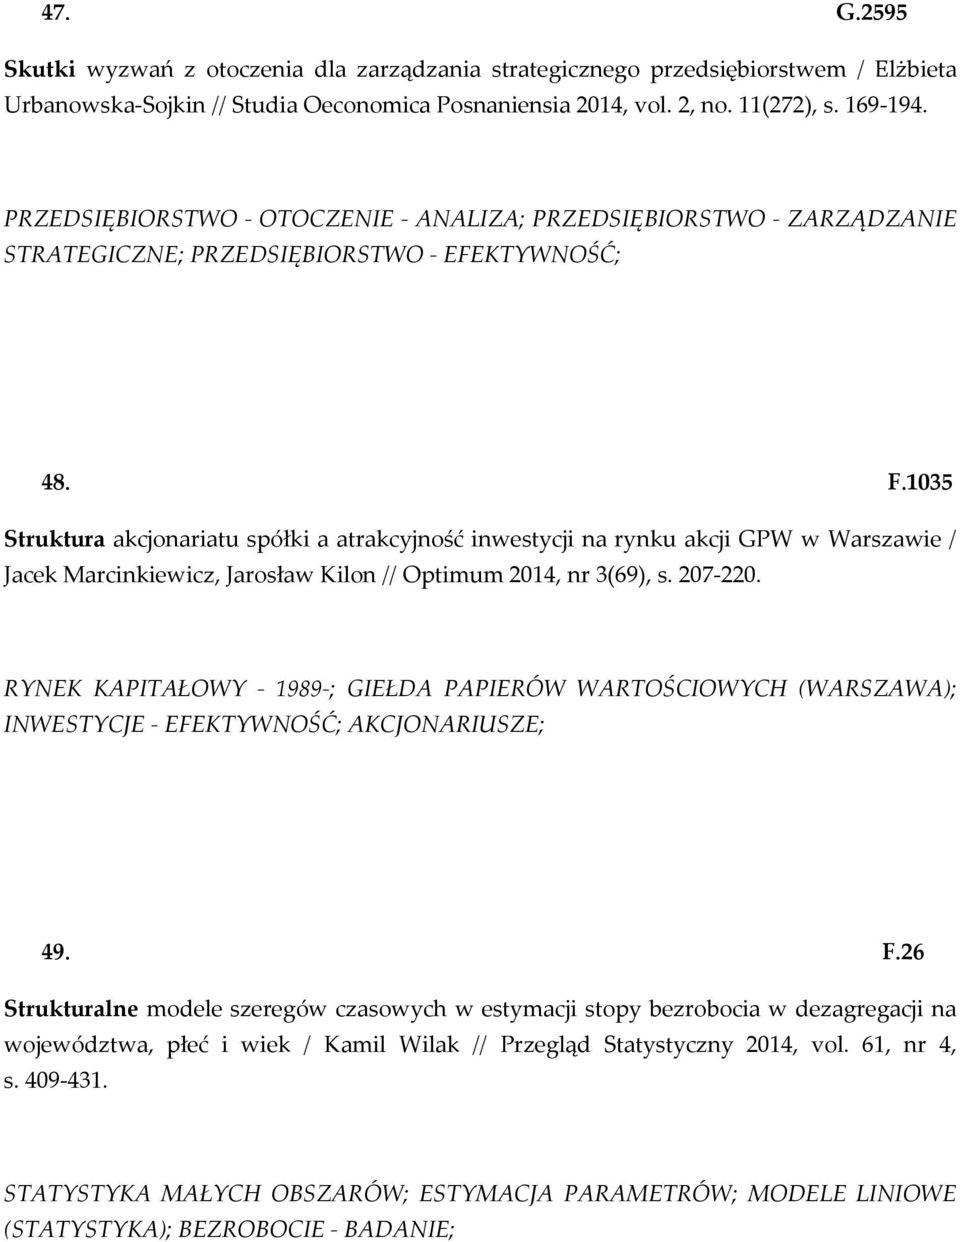 1035 Struktura akcjonariatu spółki a atrakcyjność inwestycji na rynku akcji GPW w Warszawie / Jacek Marcinkiewicz, Jarosław Kilon // Optimum 2014, nr 3(69), s. 207-220.